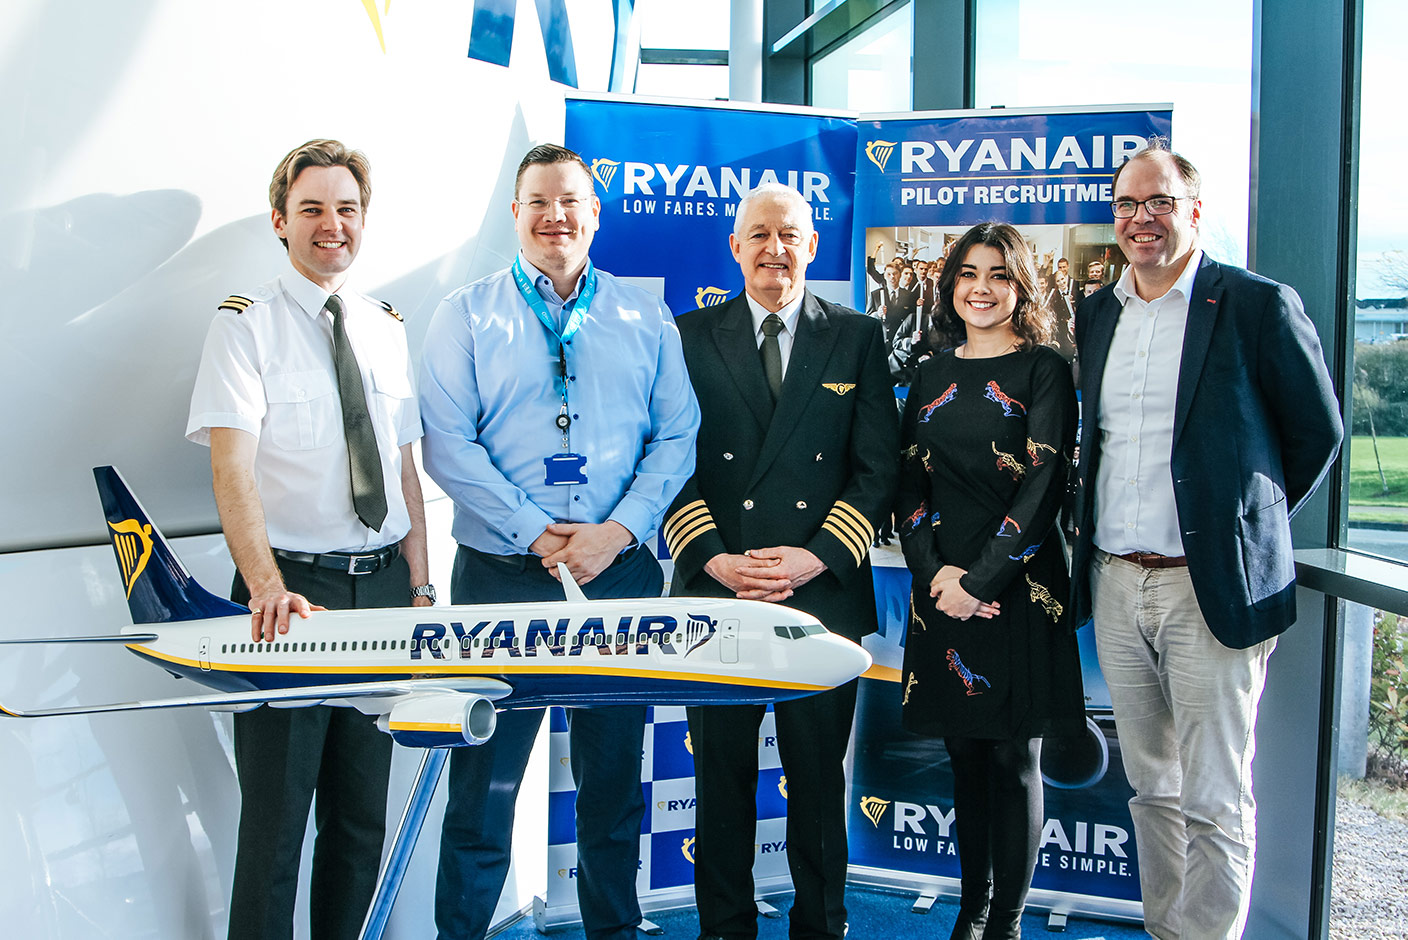 Ryanair Startet Neues Ausbildungsprogramm Für Piloten In Zusammenarbeit Mit SKY4u ATO